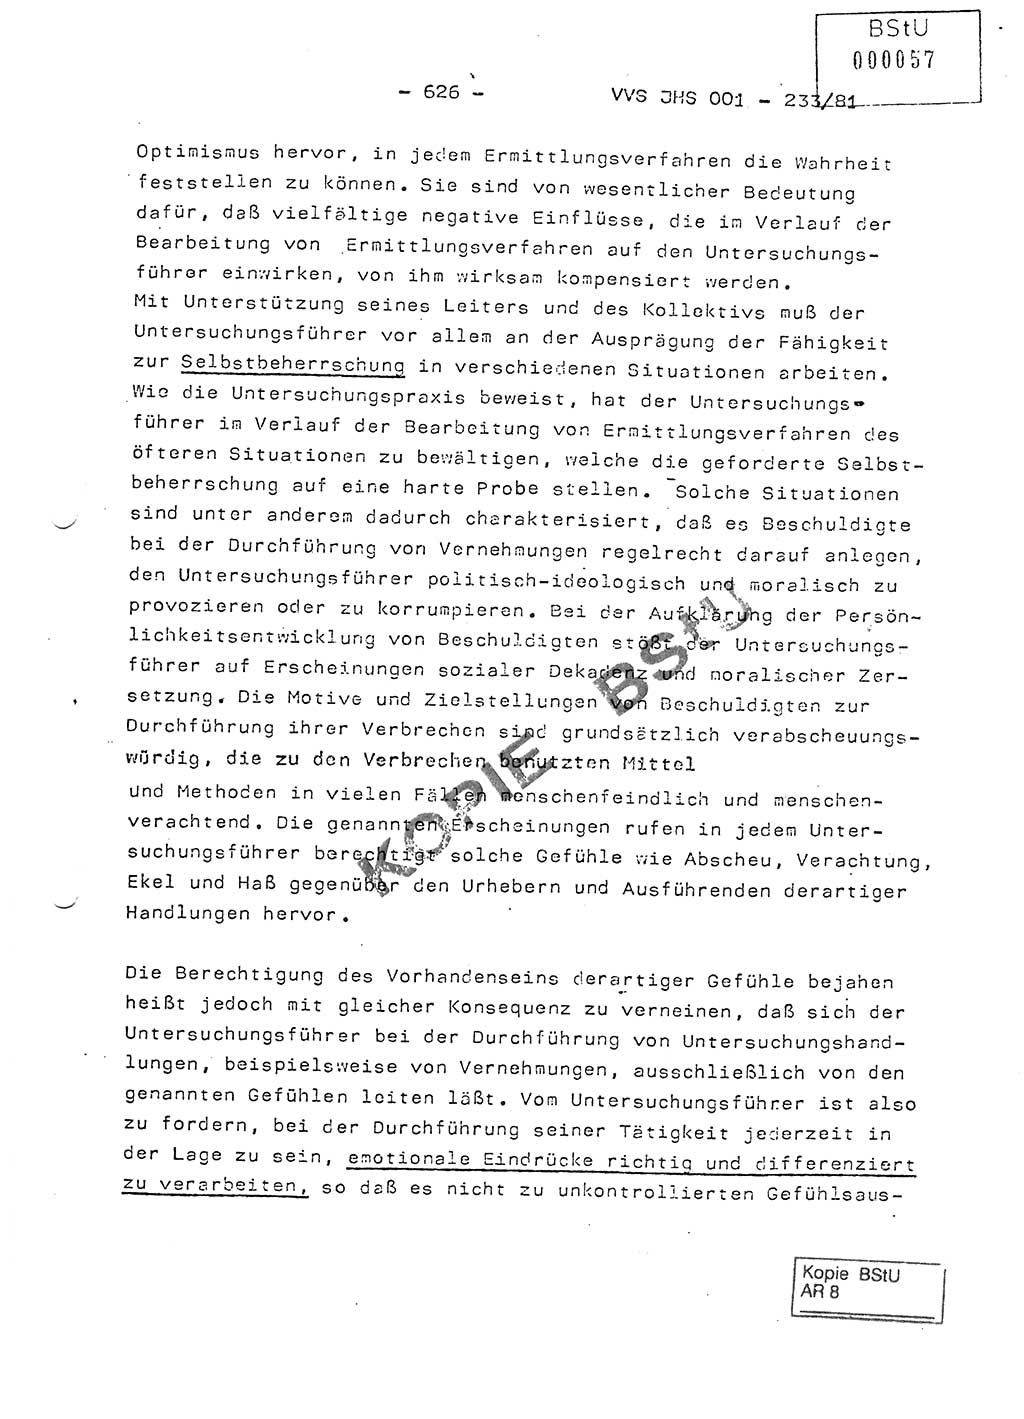 Dissertation Oberstleutnant Horst Zank (JHS), Oberstleutnant Dr. Karl-Heinz Knoblauch (JHS), Oberstleutnant Gustav-Adolf Kowalewski (HA Ⅸ), Oberstleutnant Wolfgang Plötner (HA Ⅸ), Ministerium für Staatssicherheit (MfS) [Deutsche Demokratische Republik (DDR)], Juristische Hochschule (JHS), Vertrauliche Verschlußsache (VVS) o001-233/81, Potsdam 1981, Blatt 626 (Diss. MfS DDR JHS VVS o001-233/81 1981, Bl. 626)